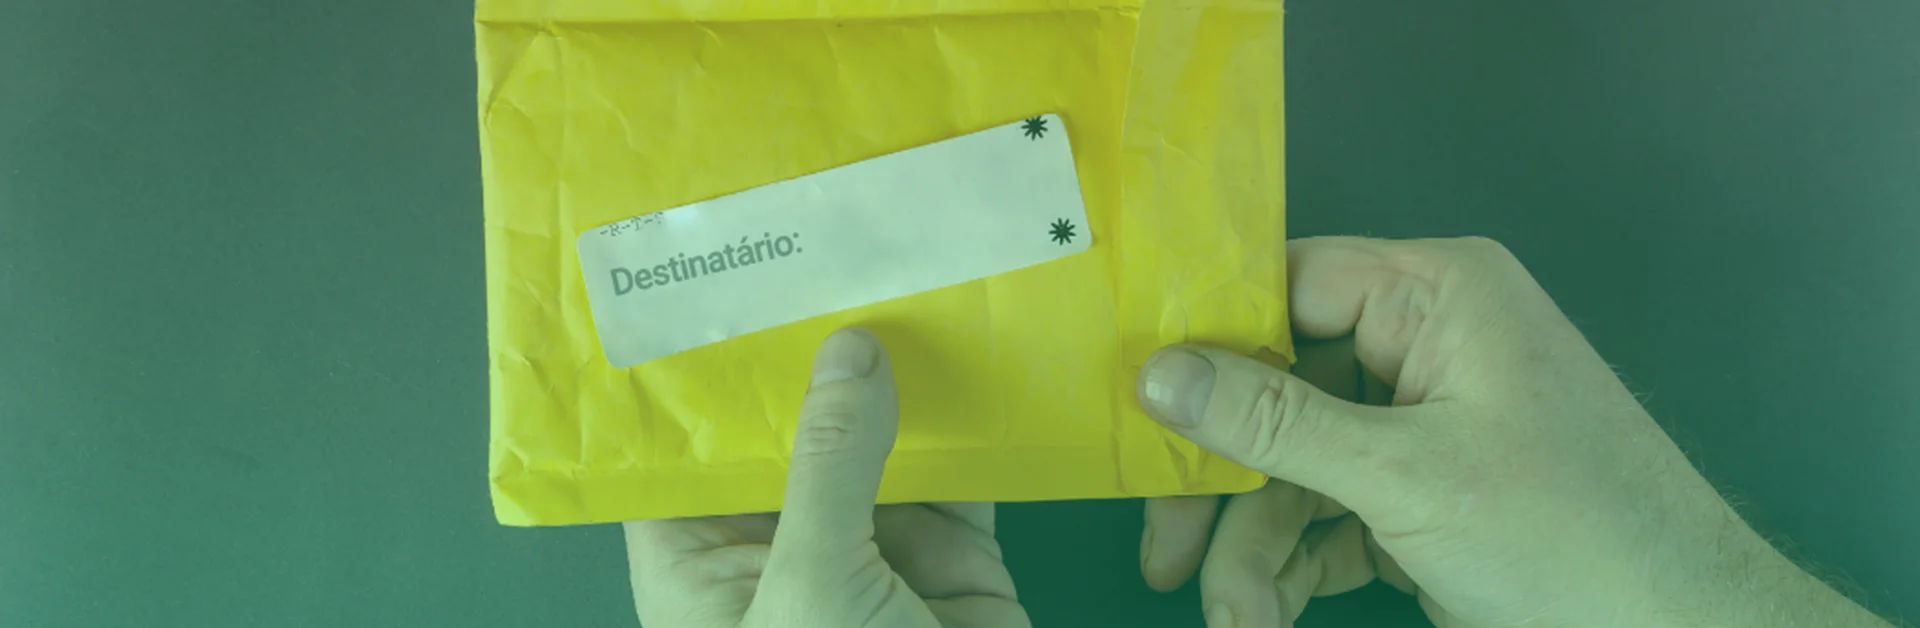 Remetente e destinatário: na imagem, um envelope amarelo dos Correios